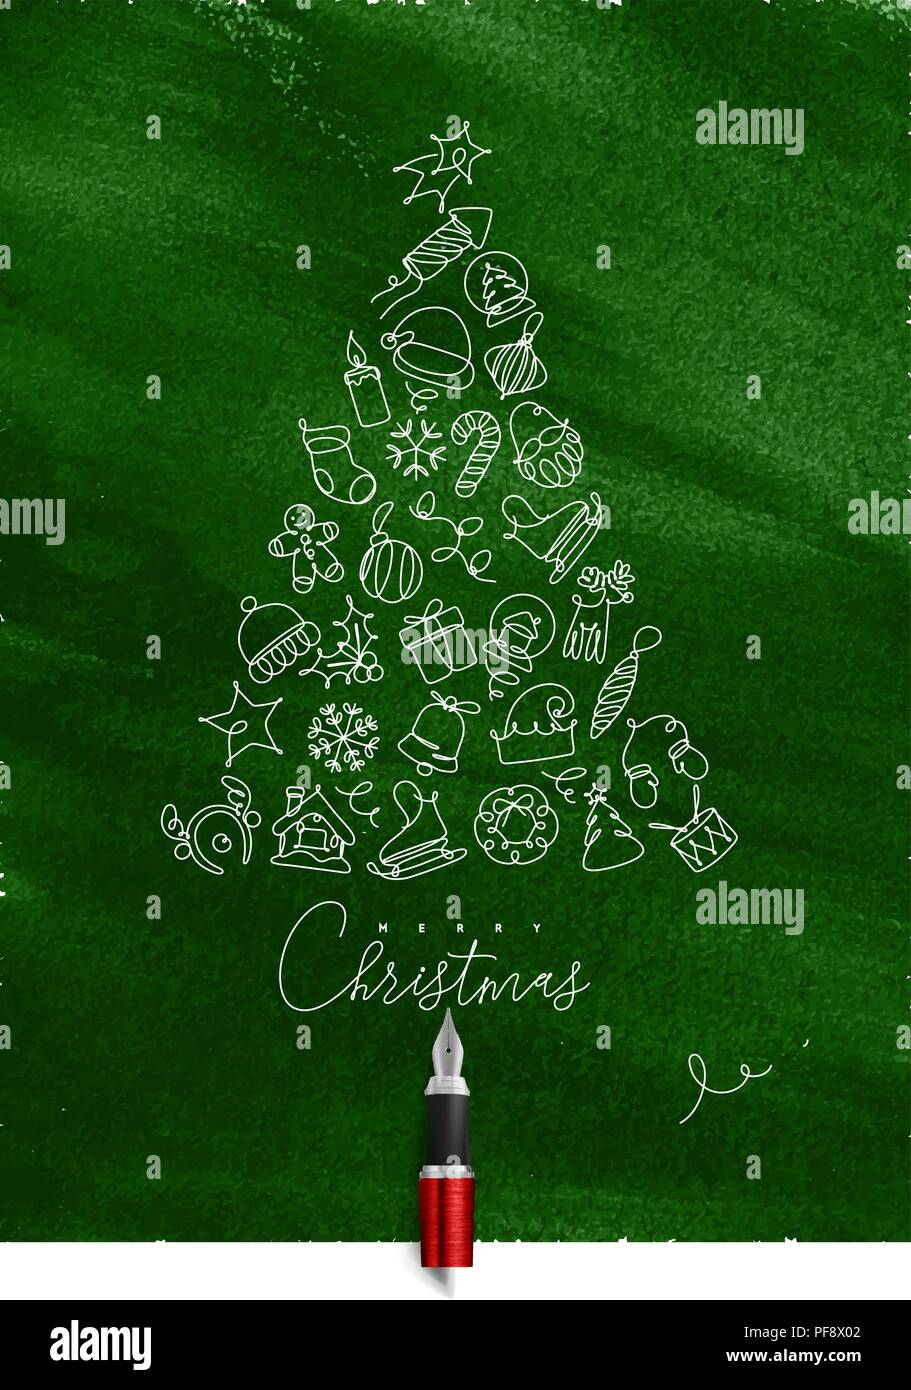 Weihnachten Spielzeug baum Zeichnen mit Pen-Leiter auf grünem Hintergrund Stock Vektor